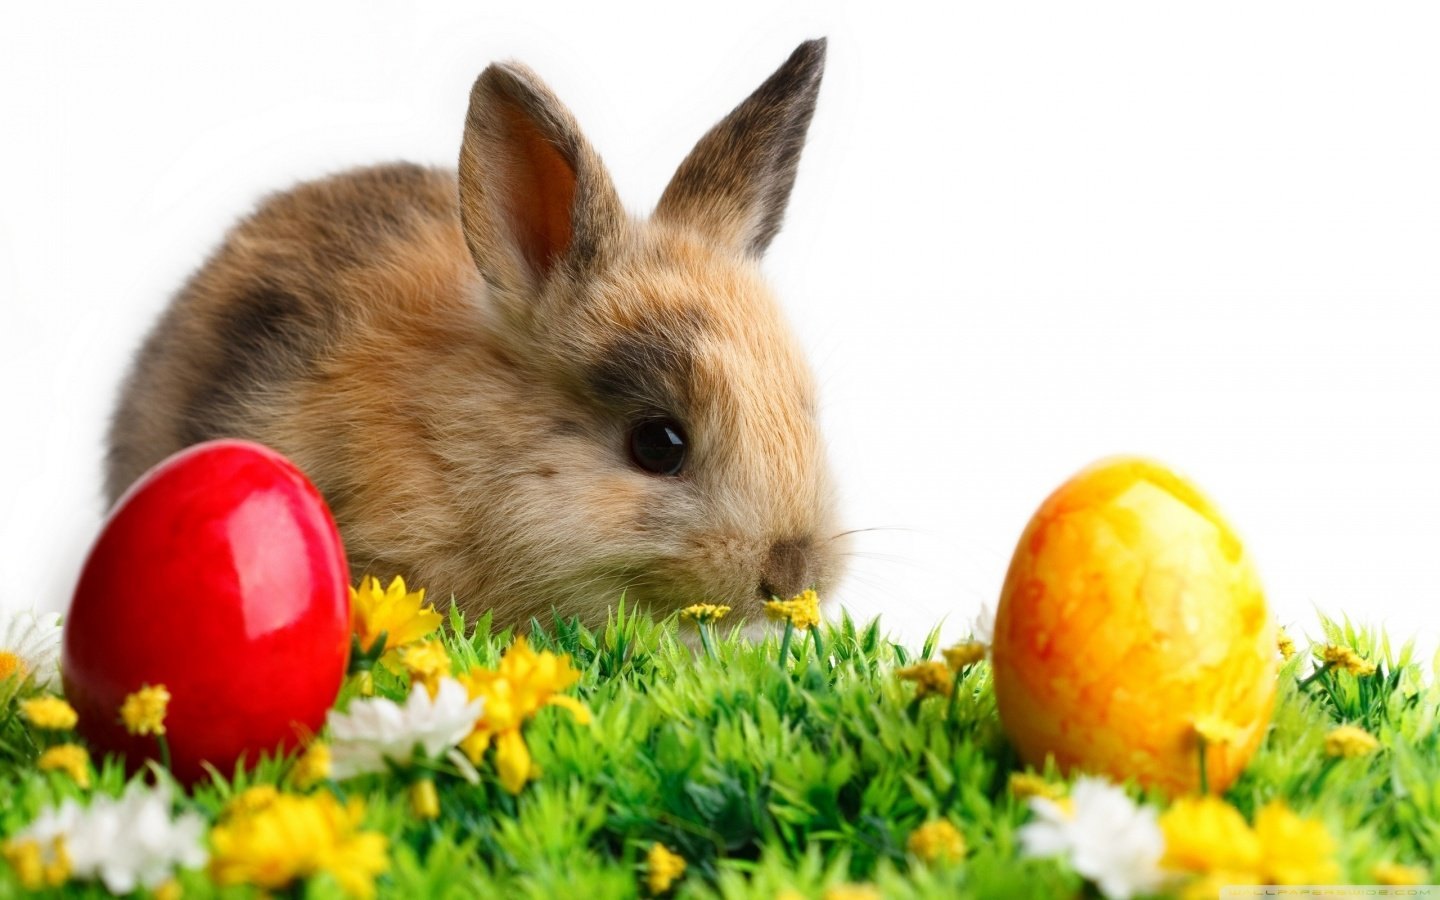 a foto mostra um filhote de coelho marrom claro, em cima de um jardim com 2 ovos coloridos.